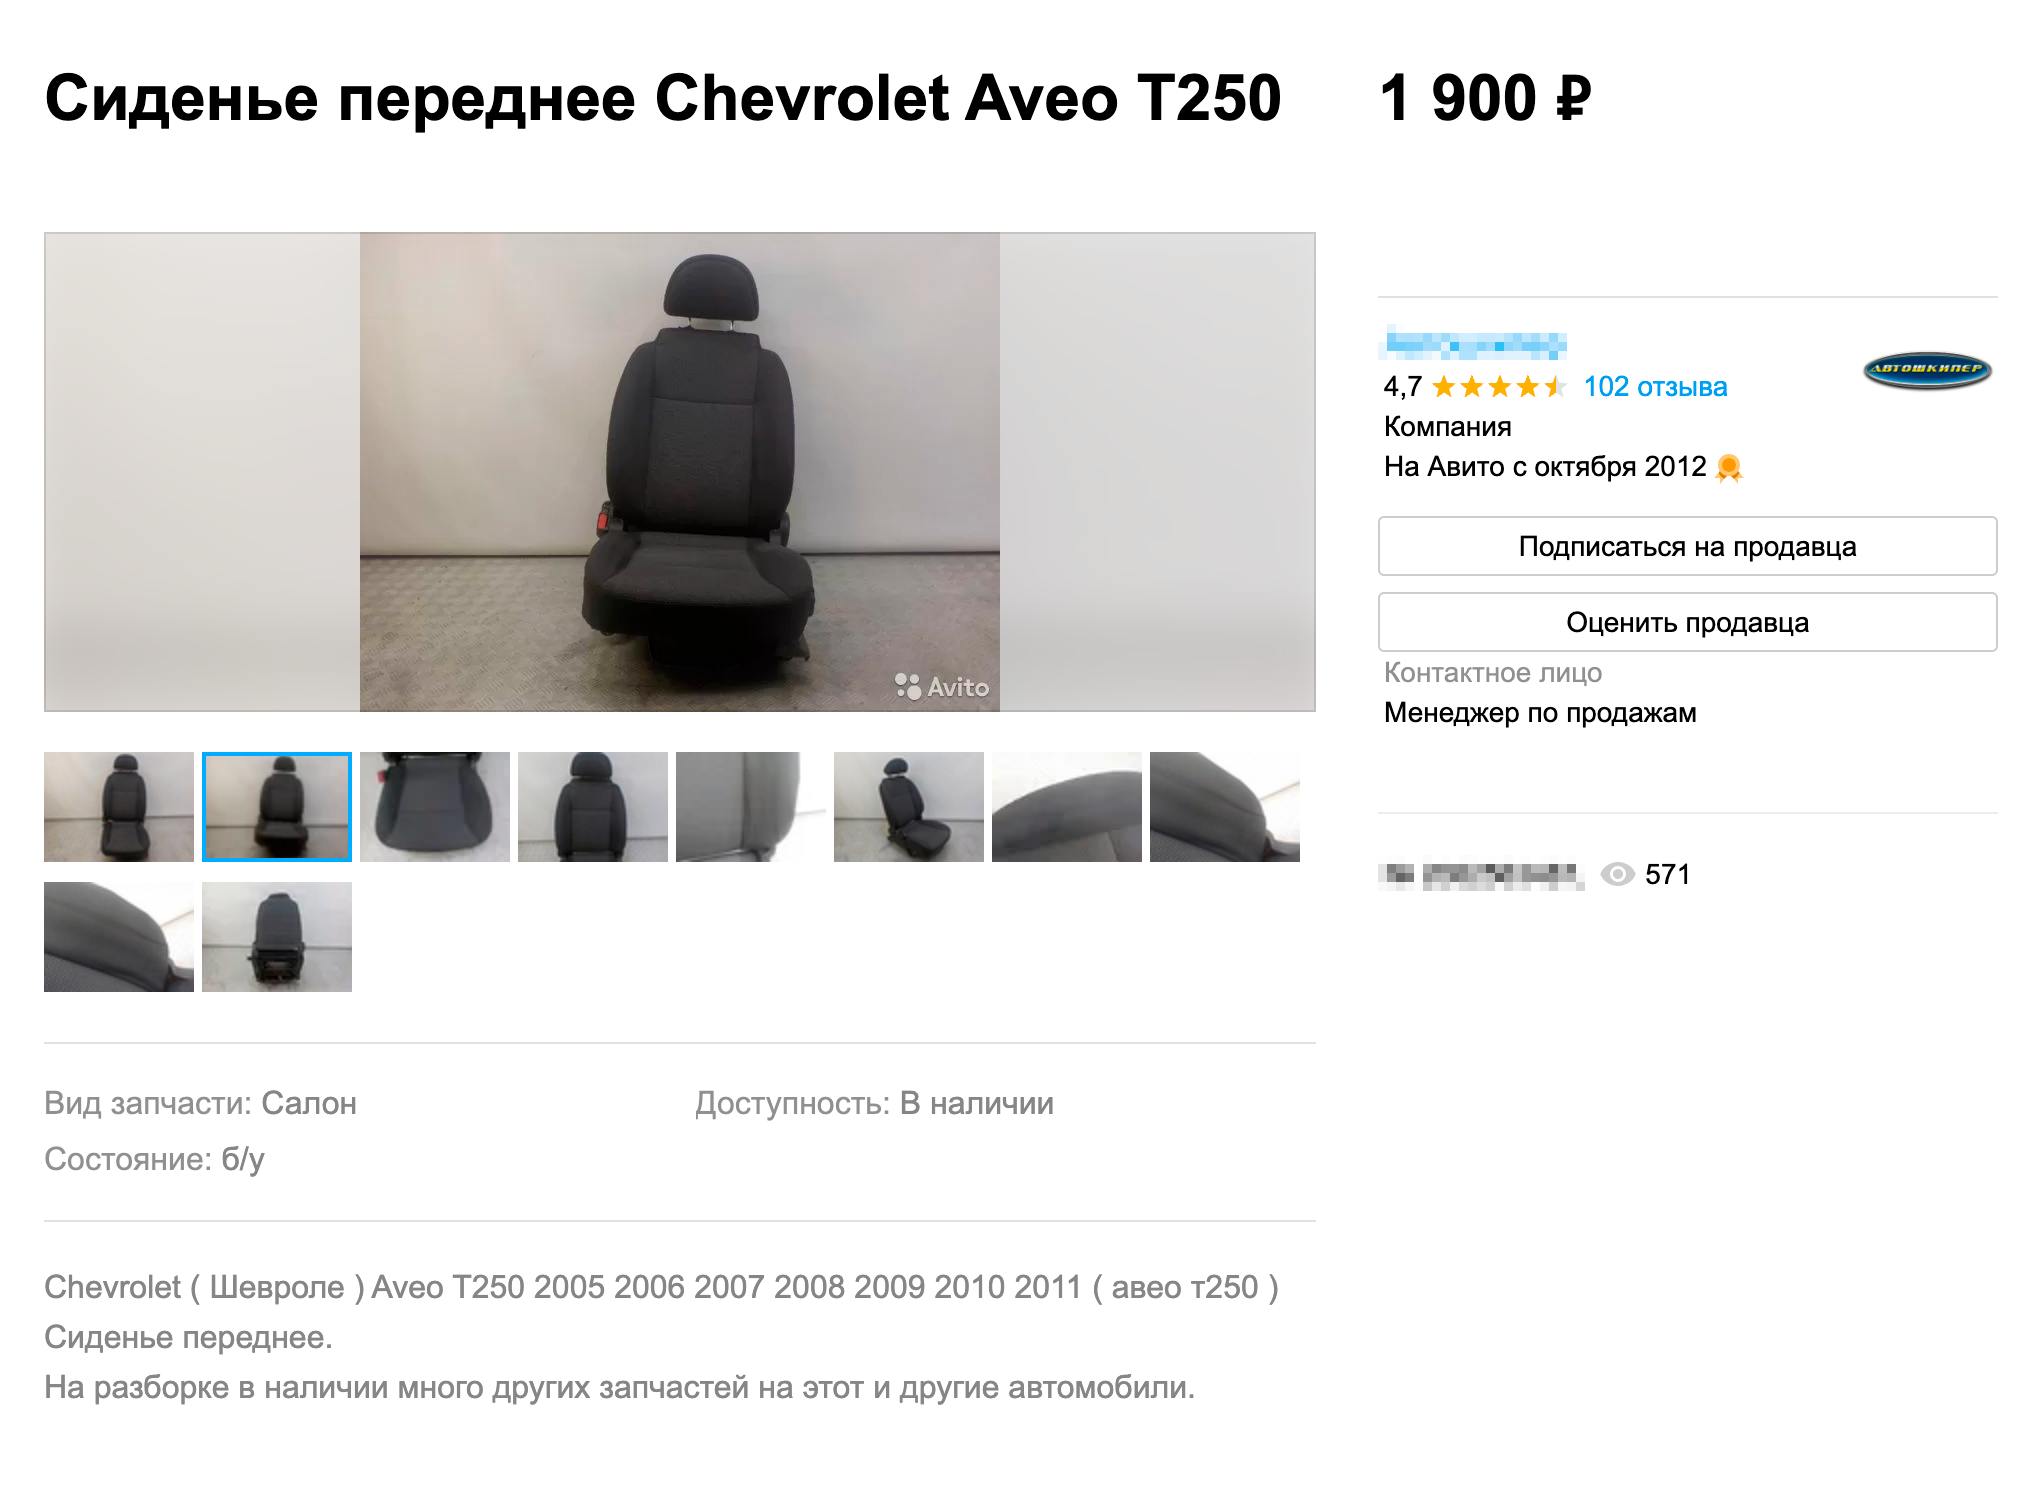 Кресло водителя для Шевроле Авео за 1900 ₽ — отличная покупка. Источник: avito.ru